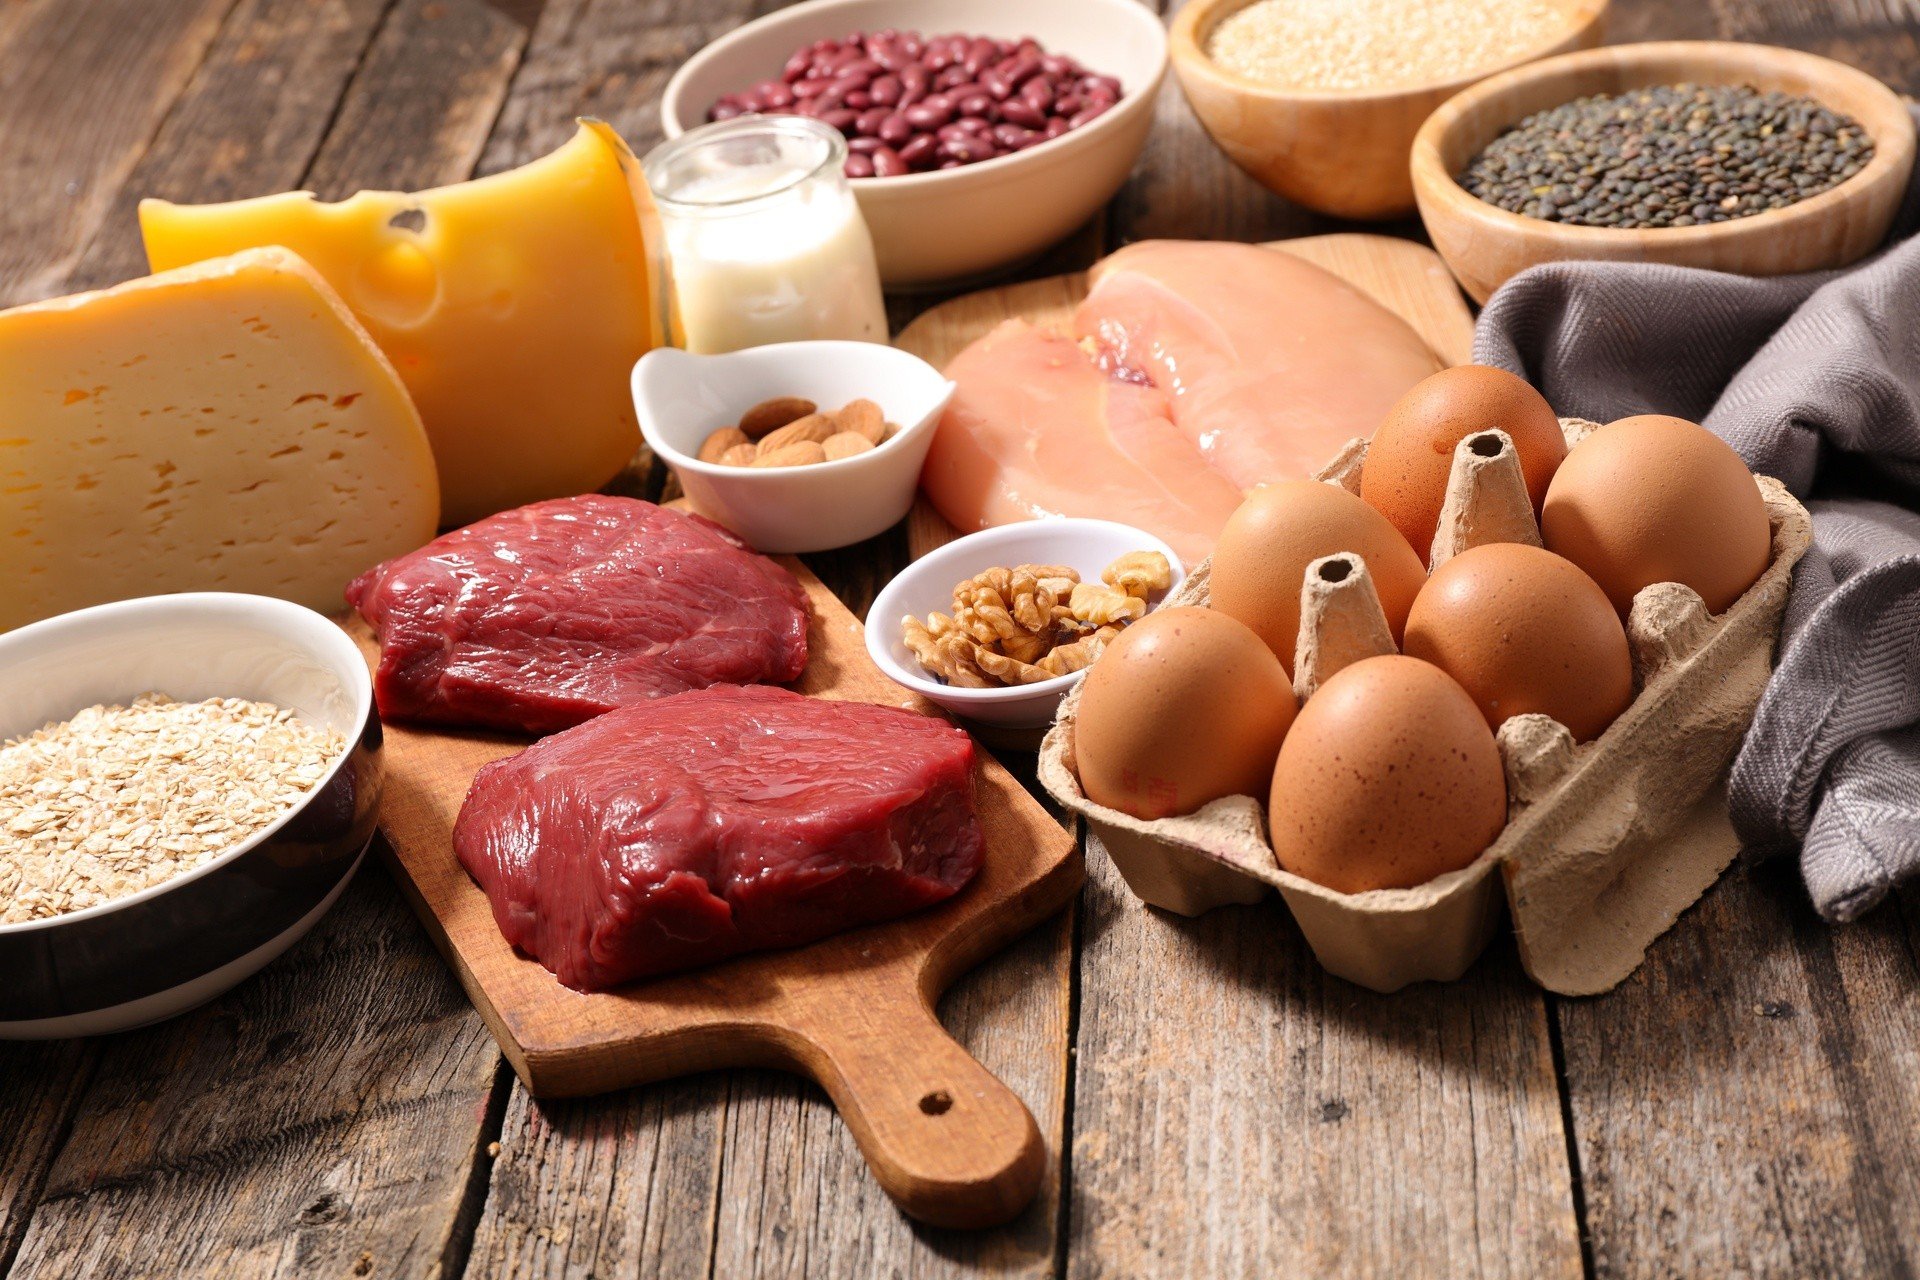 Białko w diecie – działanie i dzienne zapotrzebowanie. Najlepsze produkty  bogate w białko i aminokwasy egzogenne | Strona Zdrowia